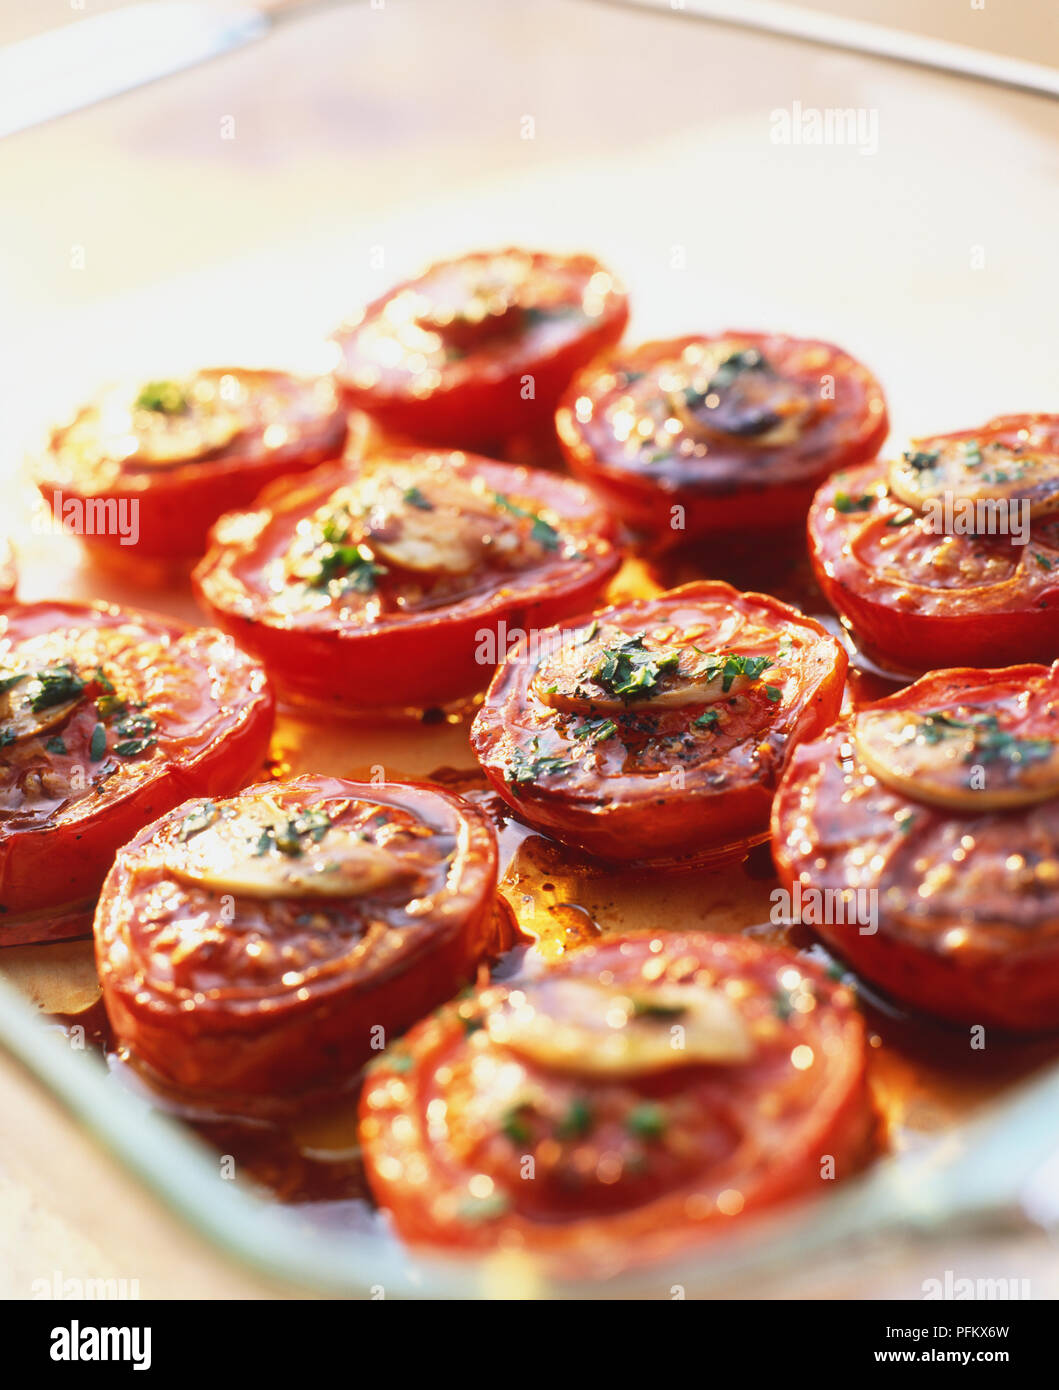 Langsam Braten Tomaten Salat, mit den Tomaten in ein Backblech mit einer Scheibe Knoblauch auf der Oberseite jeder Tomate, mit Salz und Pfeffer würzen und Kochen in Honig, Essig und Öl. Stockfoto